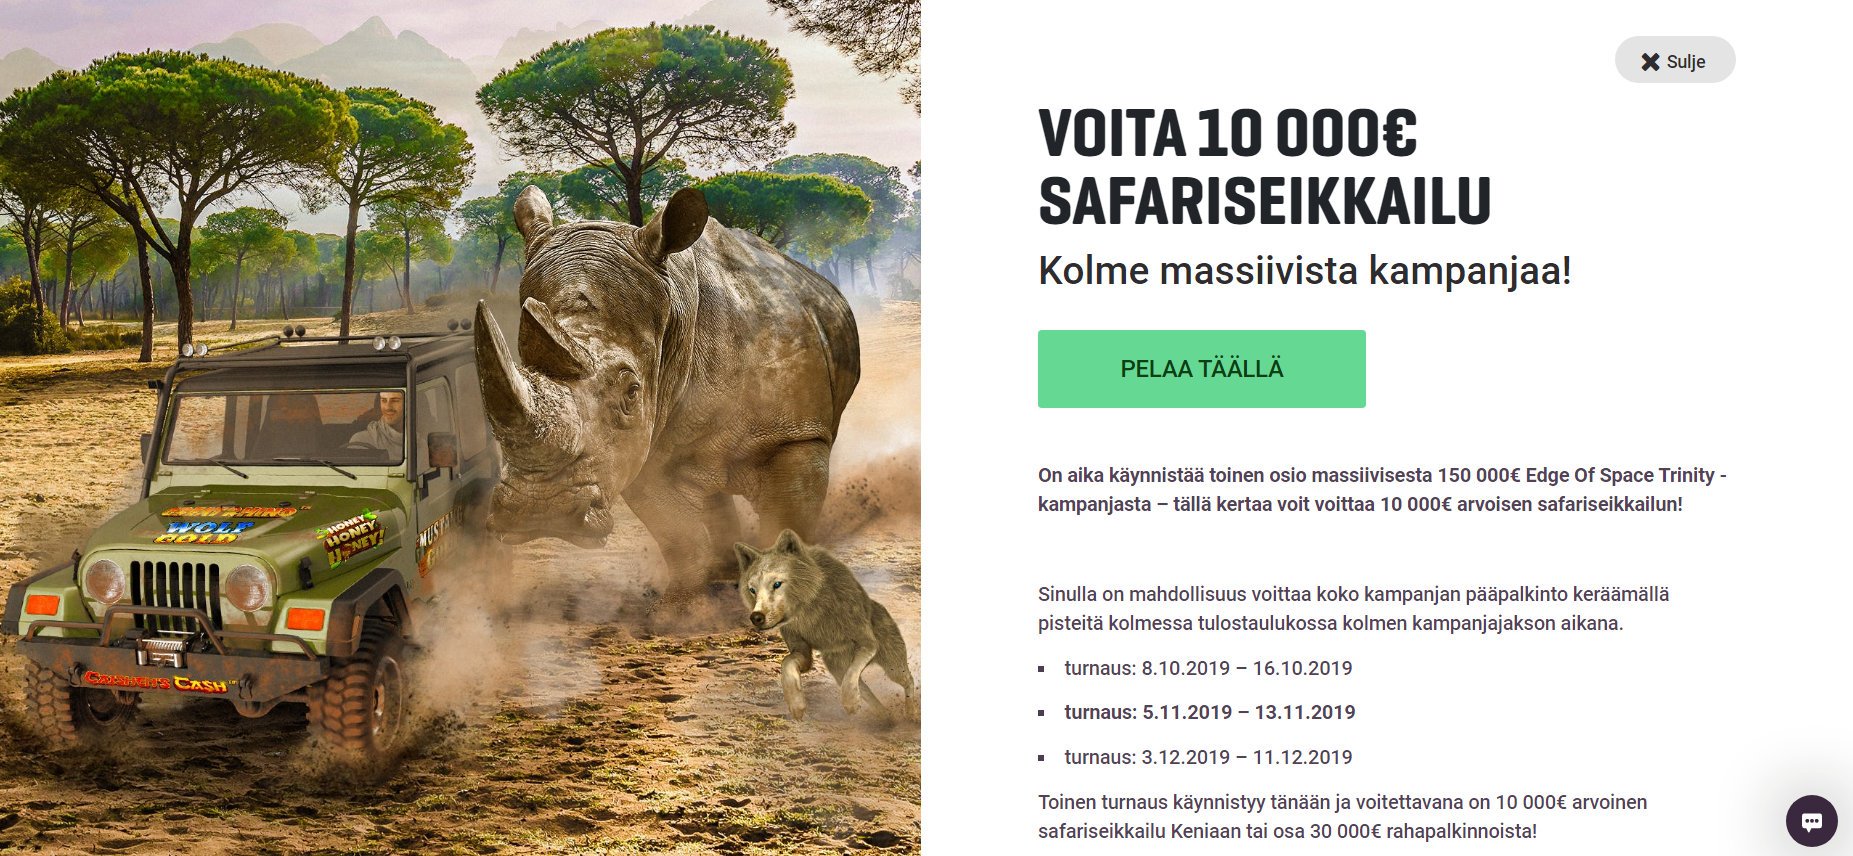 Voita 10 000 euron arvoinen safariseikkailu!